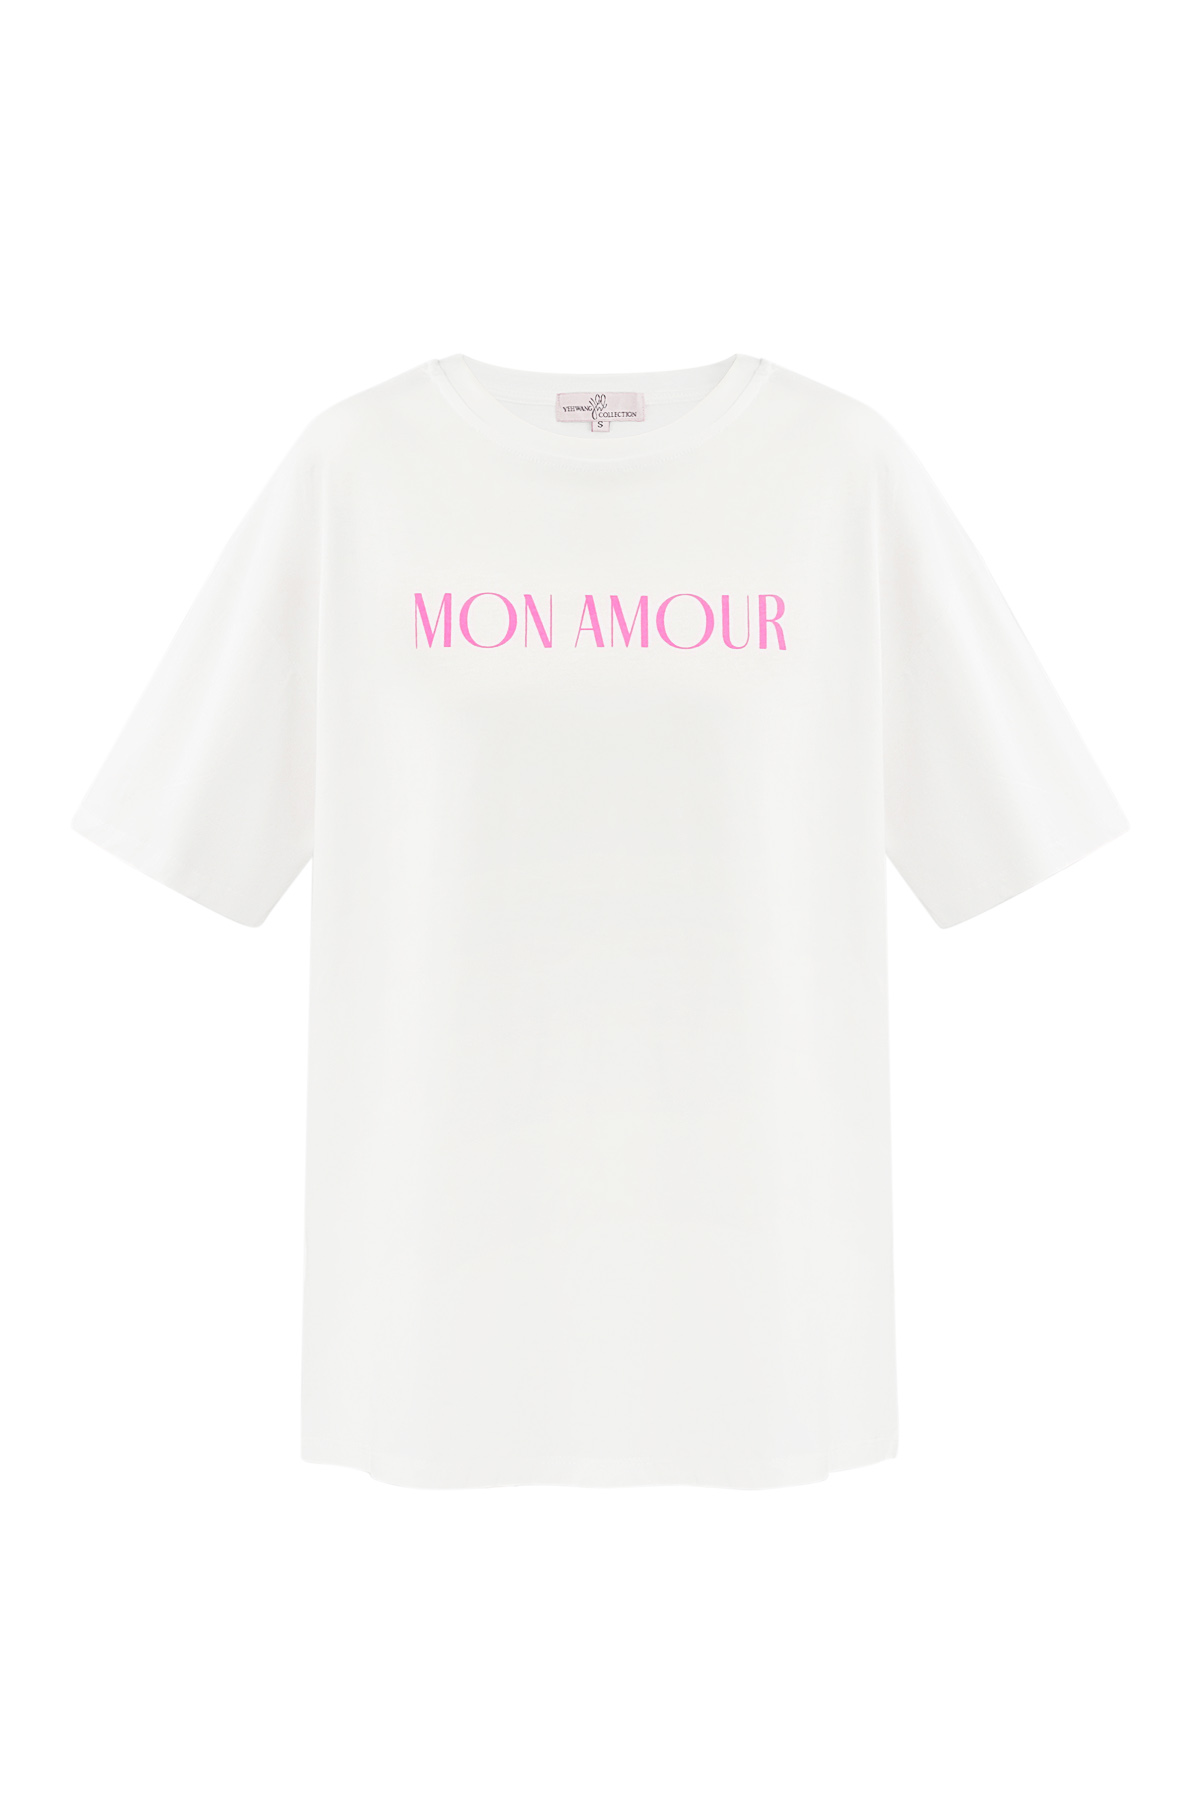 Mon amour tişört - beyaz h5 